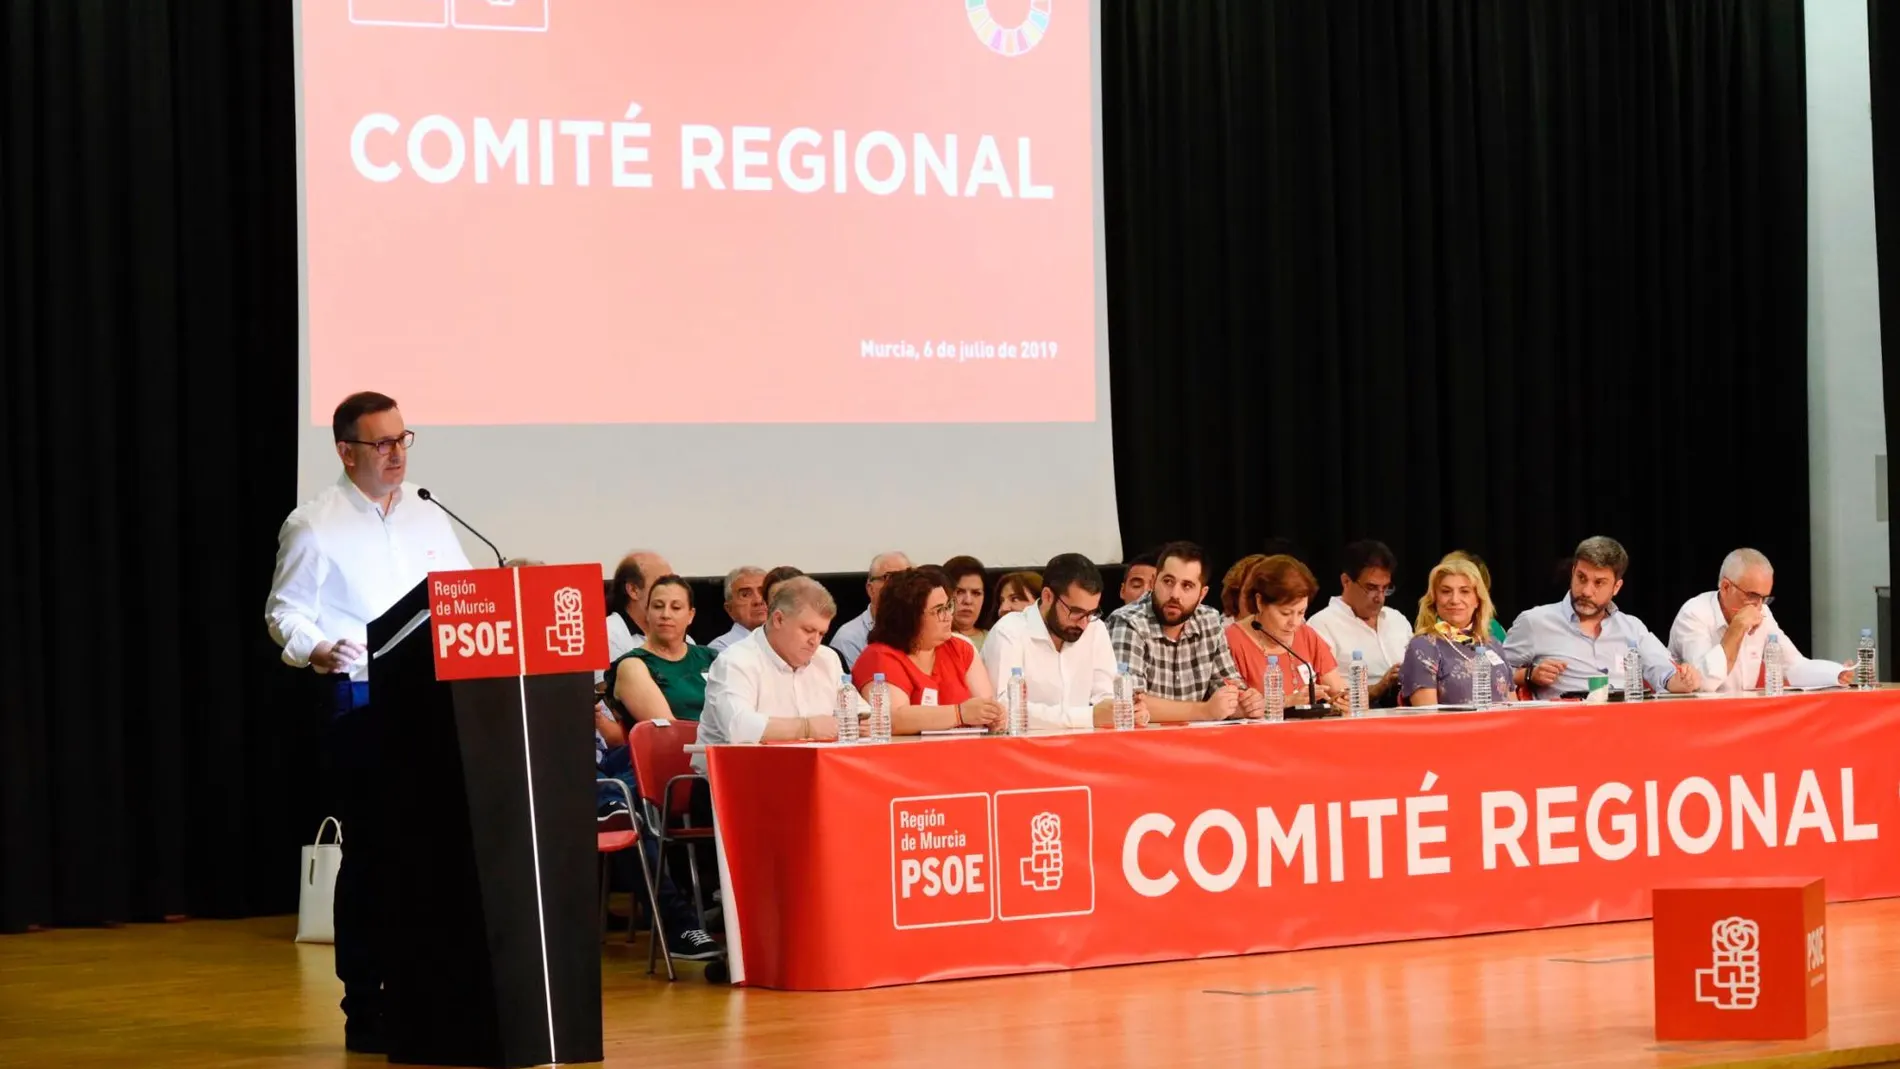 El secretario general del PSRM, Diego Conesa, contestó una a una a todas las intervenciones y opiniones que se manifestaron durante la reunión del Comité Regional del partido. LA RAZÓN